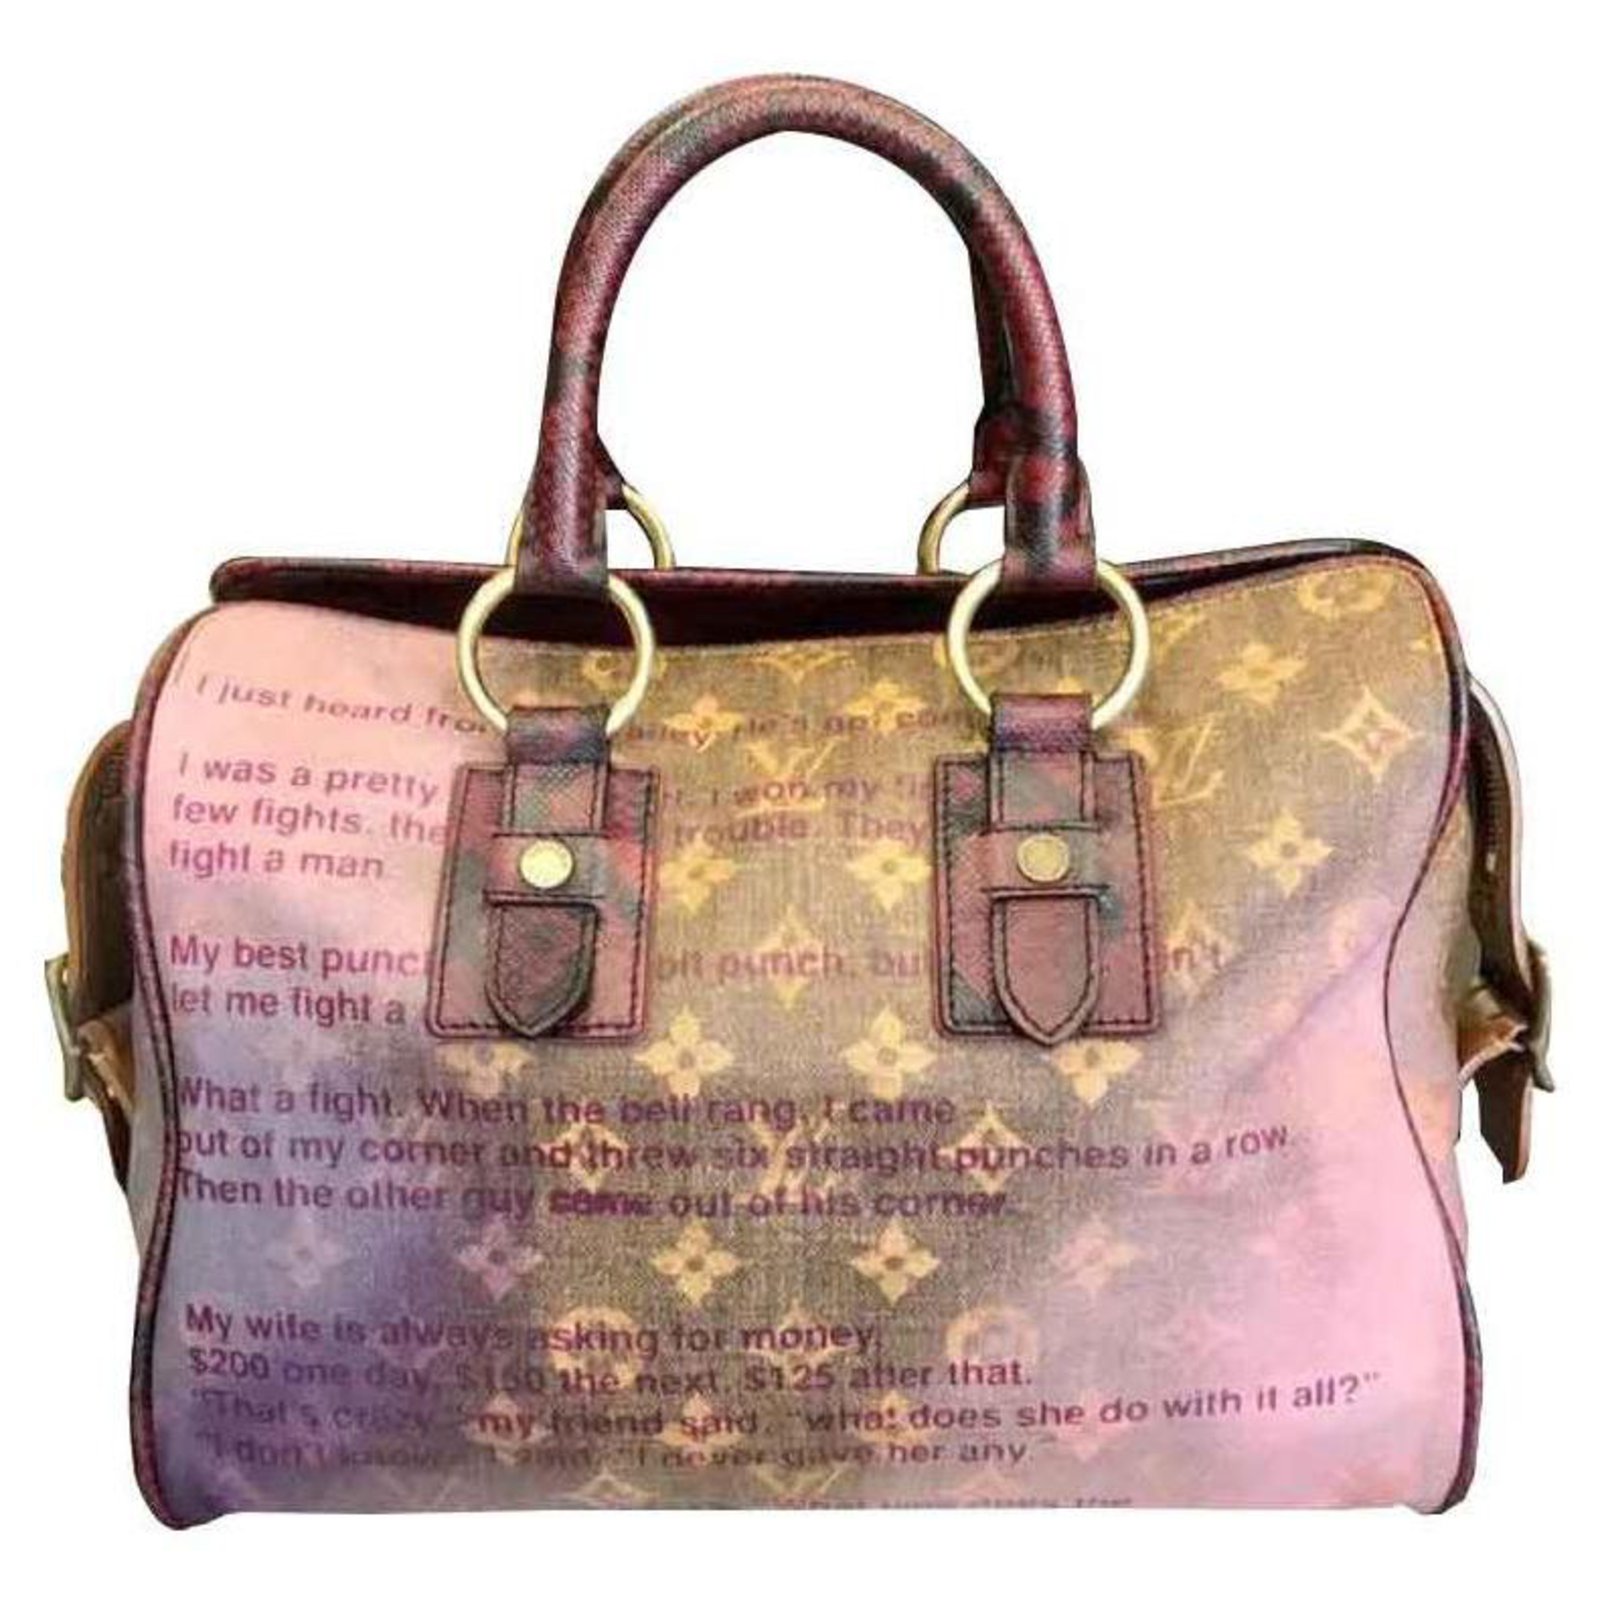 Louis Vuitton Collection 2008 Handbags Photos